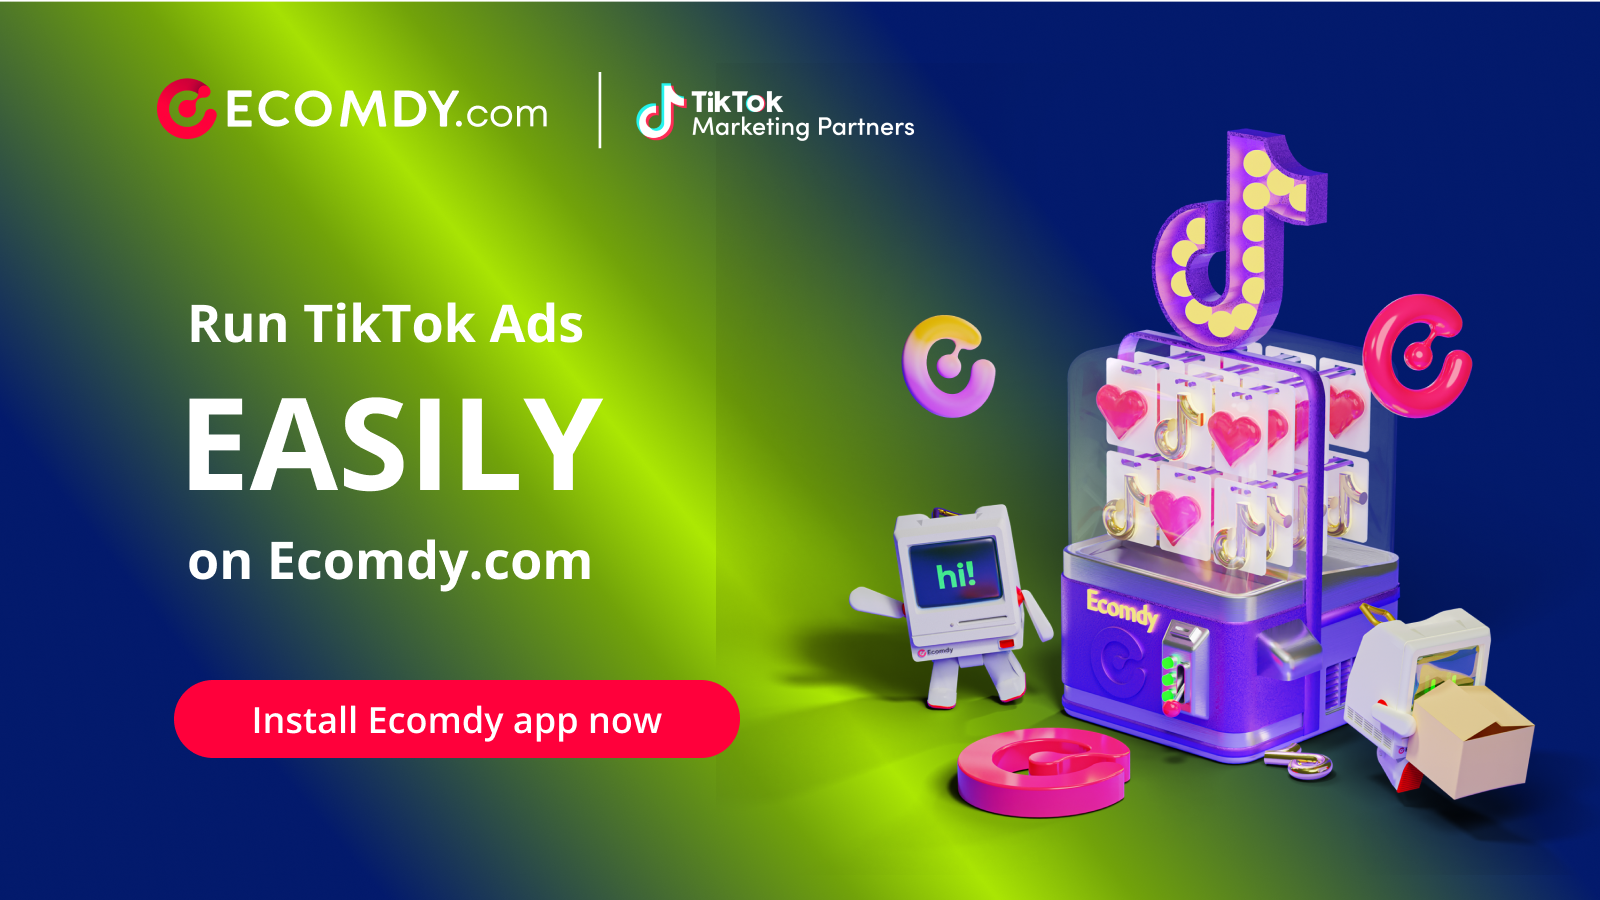 Ejecuta anuncios de TikTok directamente en Ecomdy.com